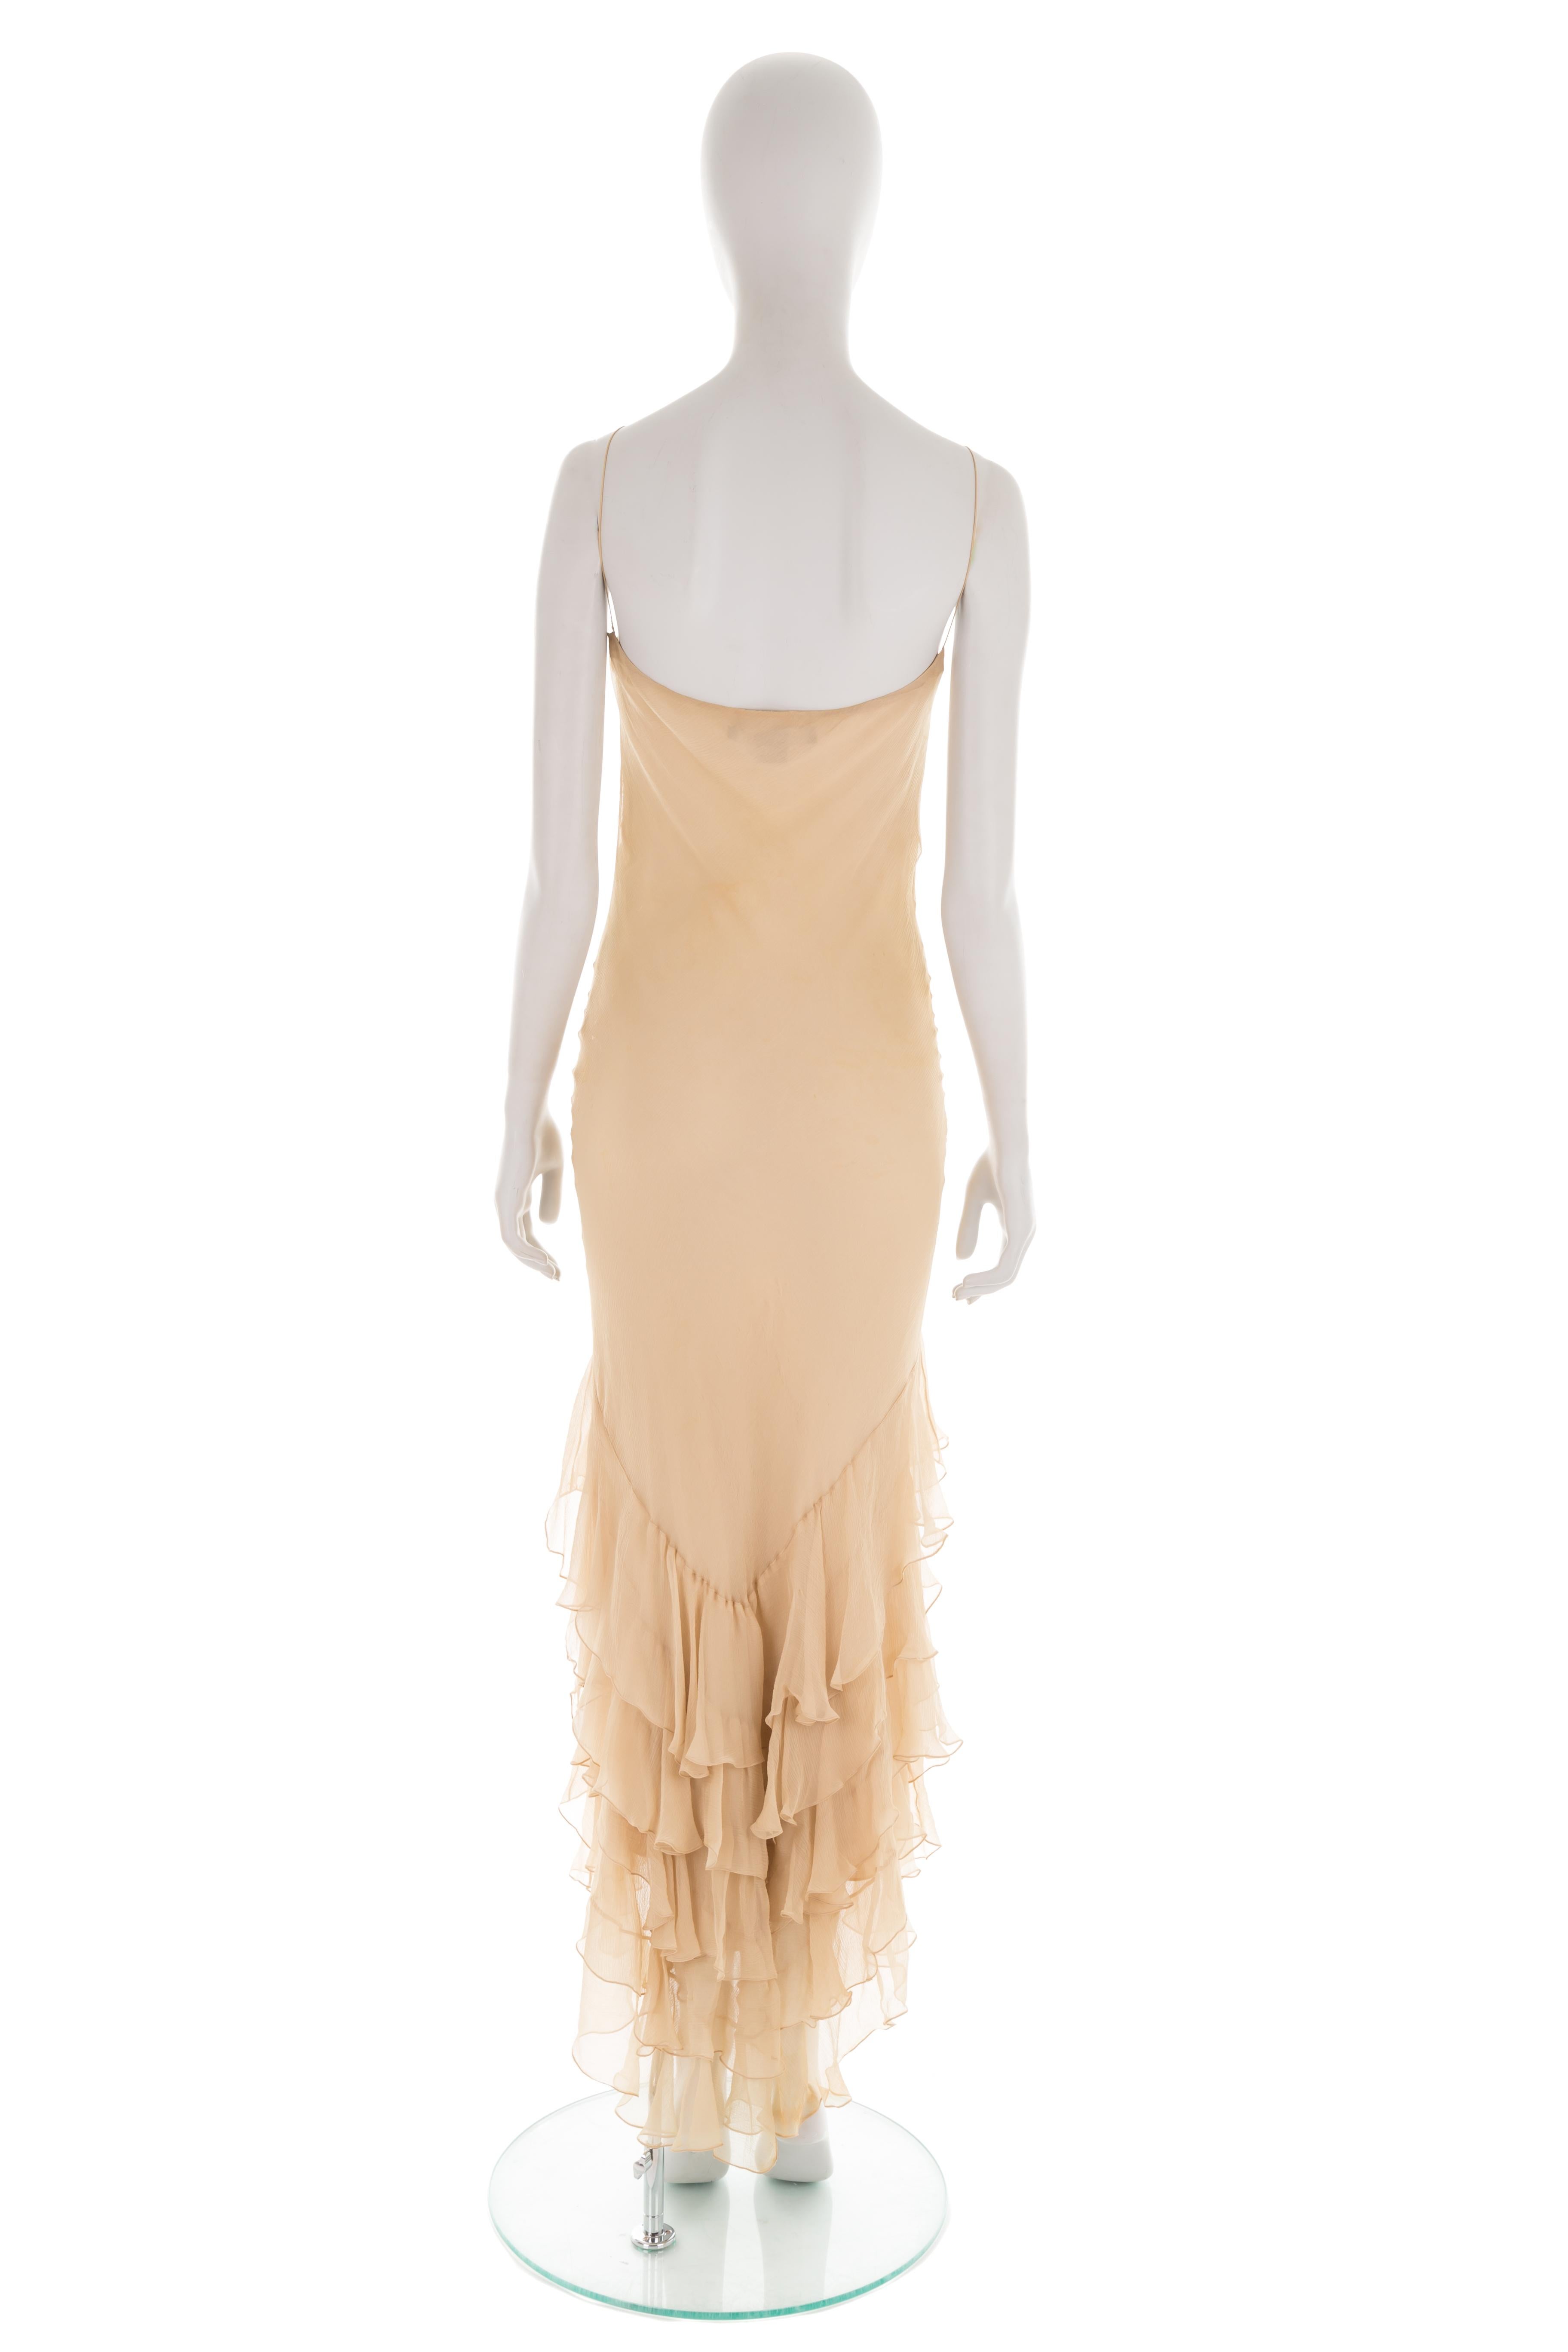 Ralph Lauren S/S 2005 beige ruffled mermaid chiffon dress 2